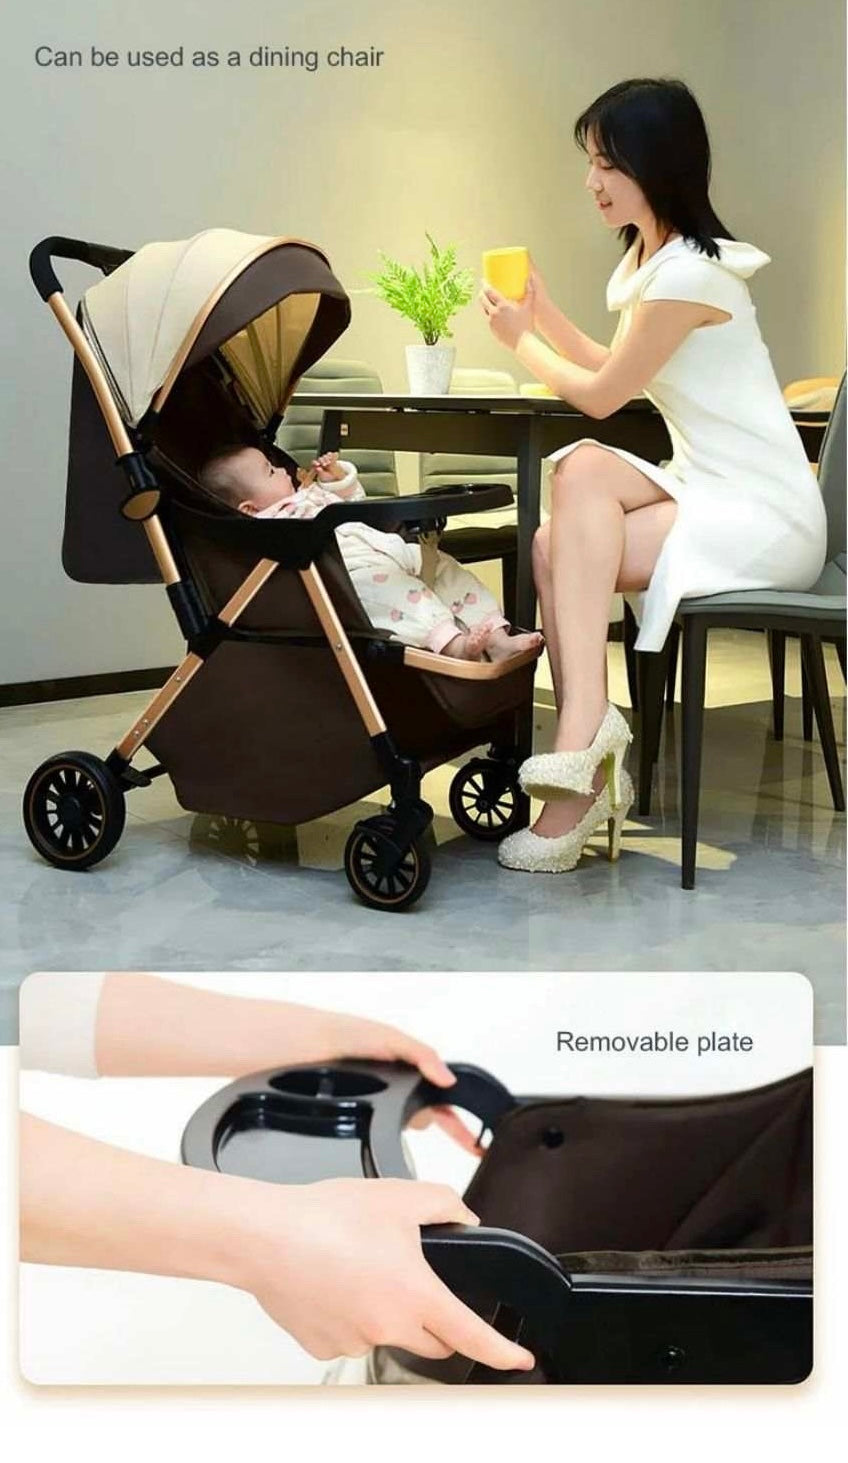 Baby stroller very light portable stroller good for travellers-Khaki